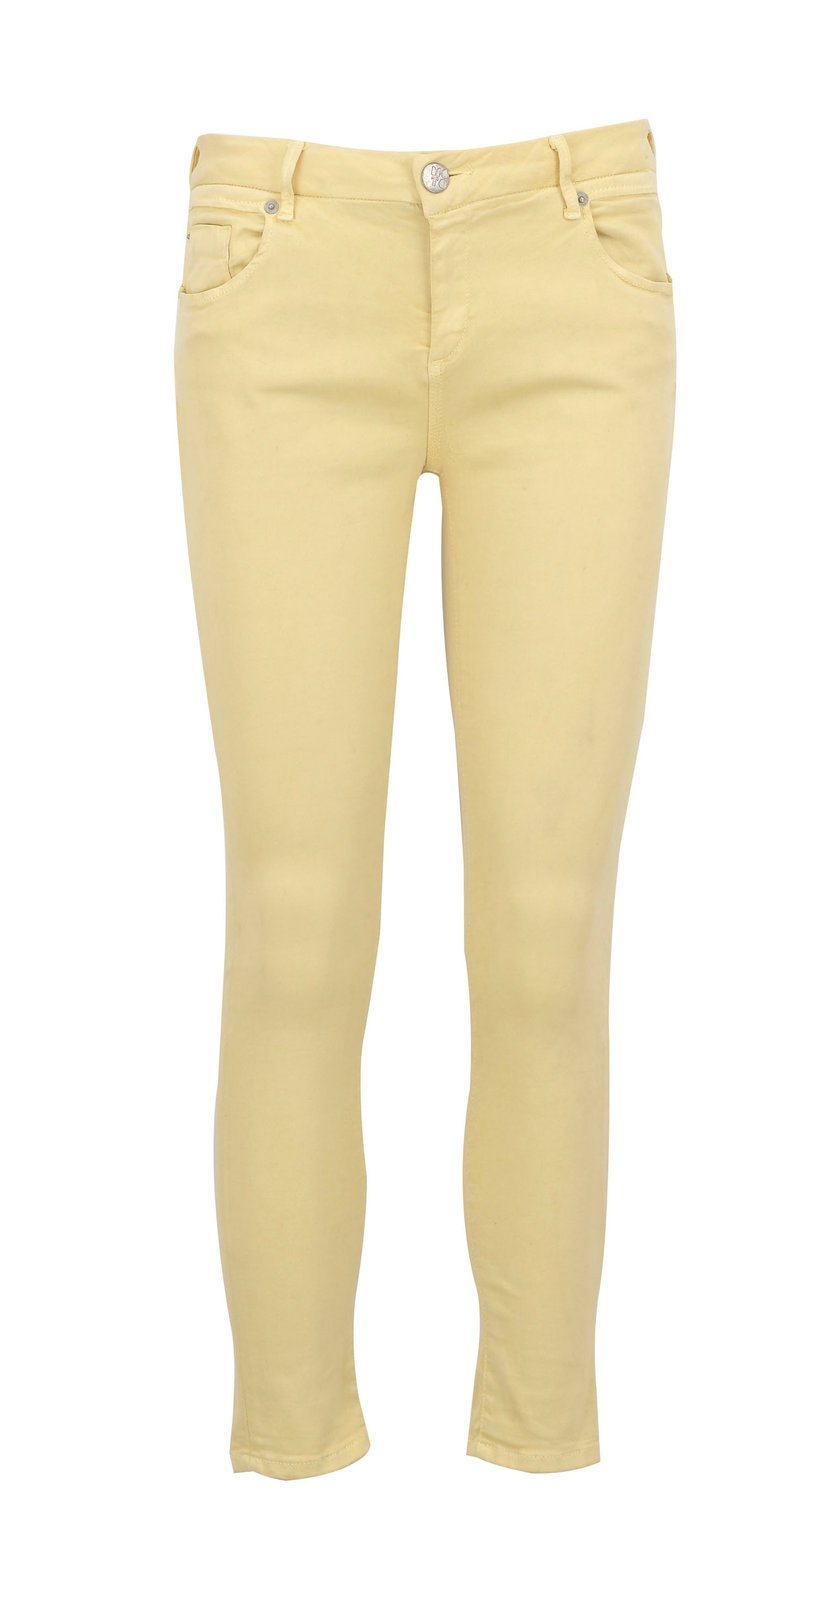 Světle žluté úzké kalhoty, Marks&Spencer